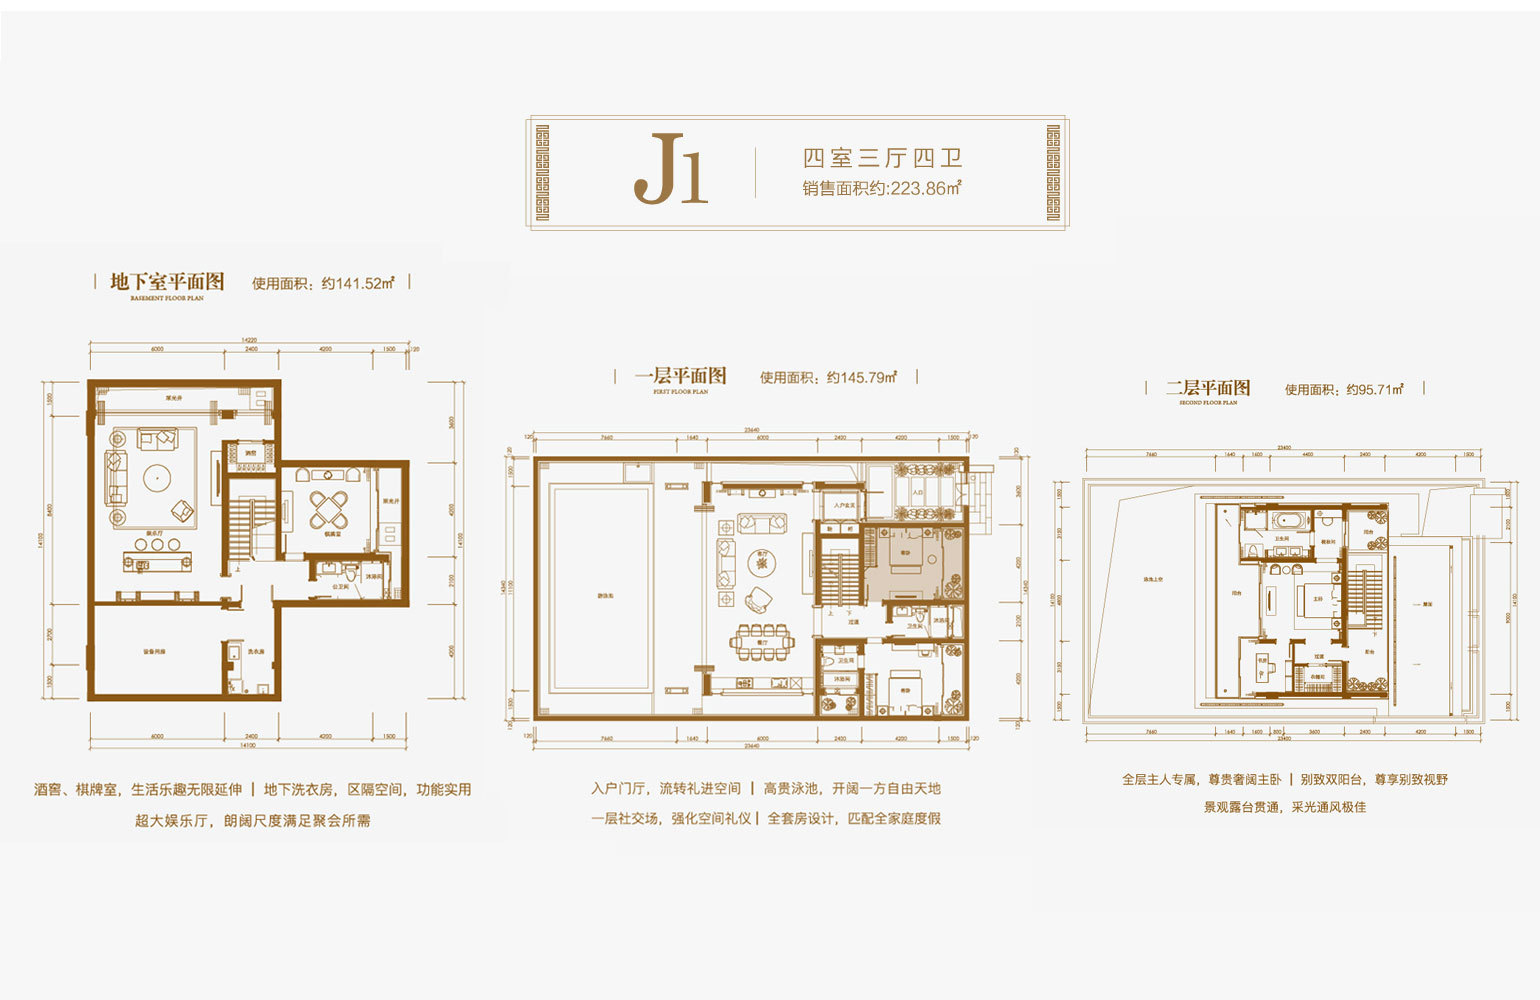 葛洲坝海棠福湾 独栋 J1户型 4室3厅4卫 建筑面积223.86㎡